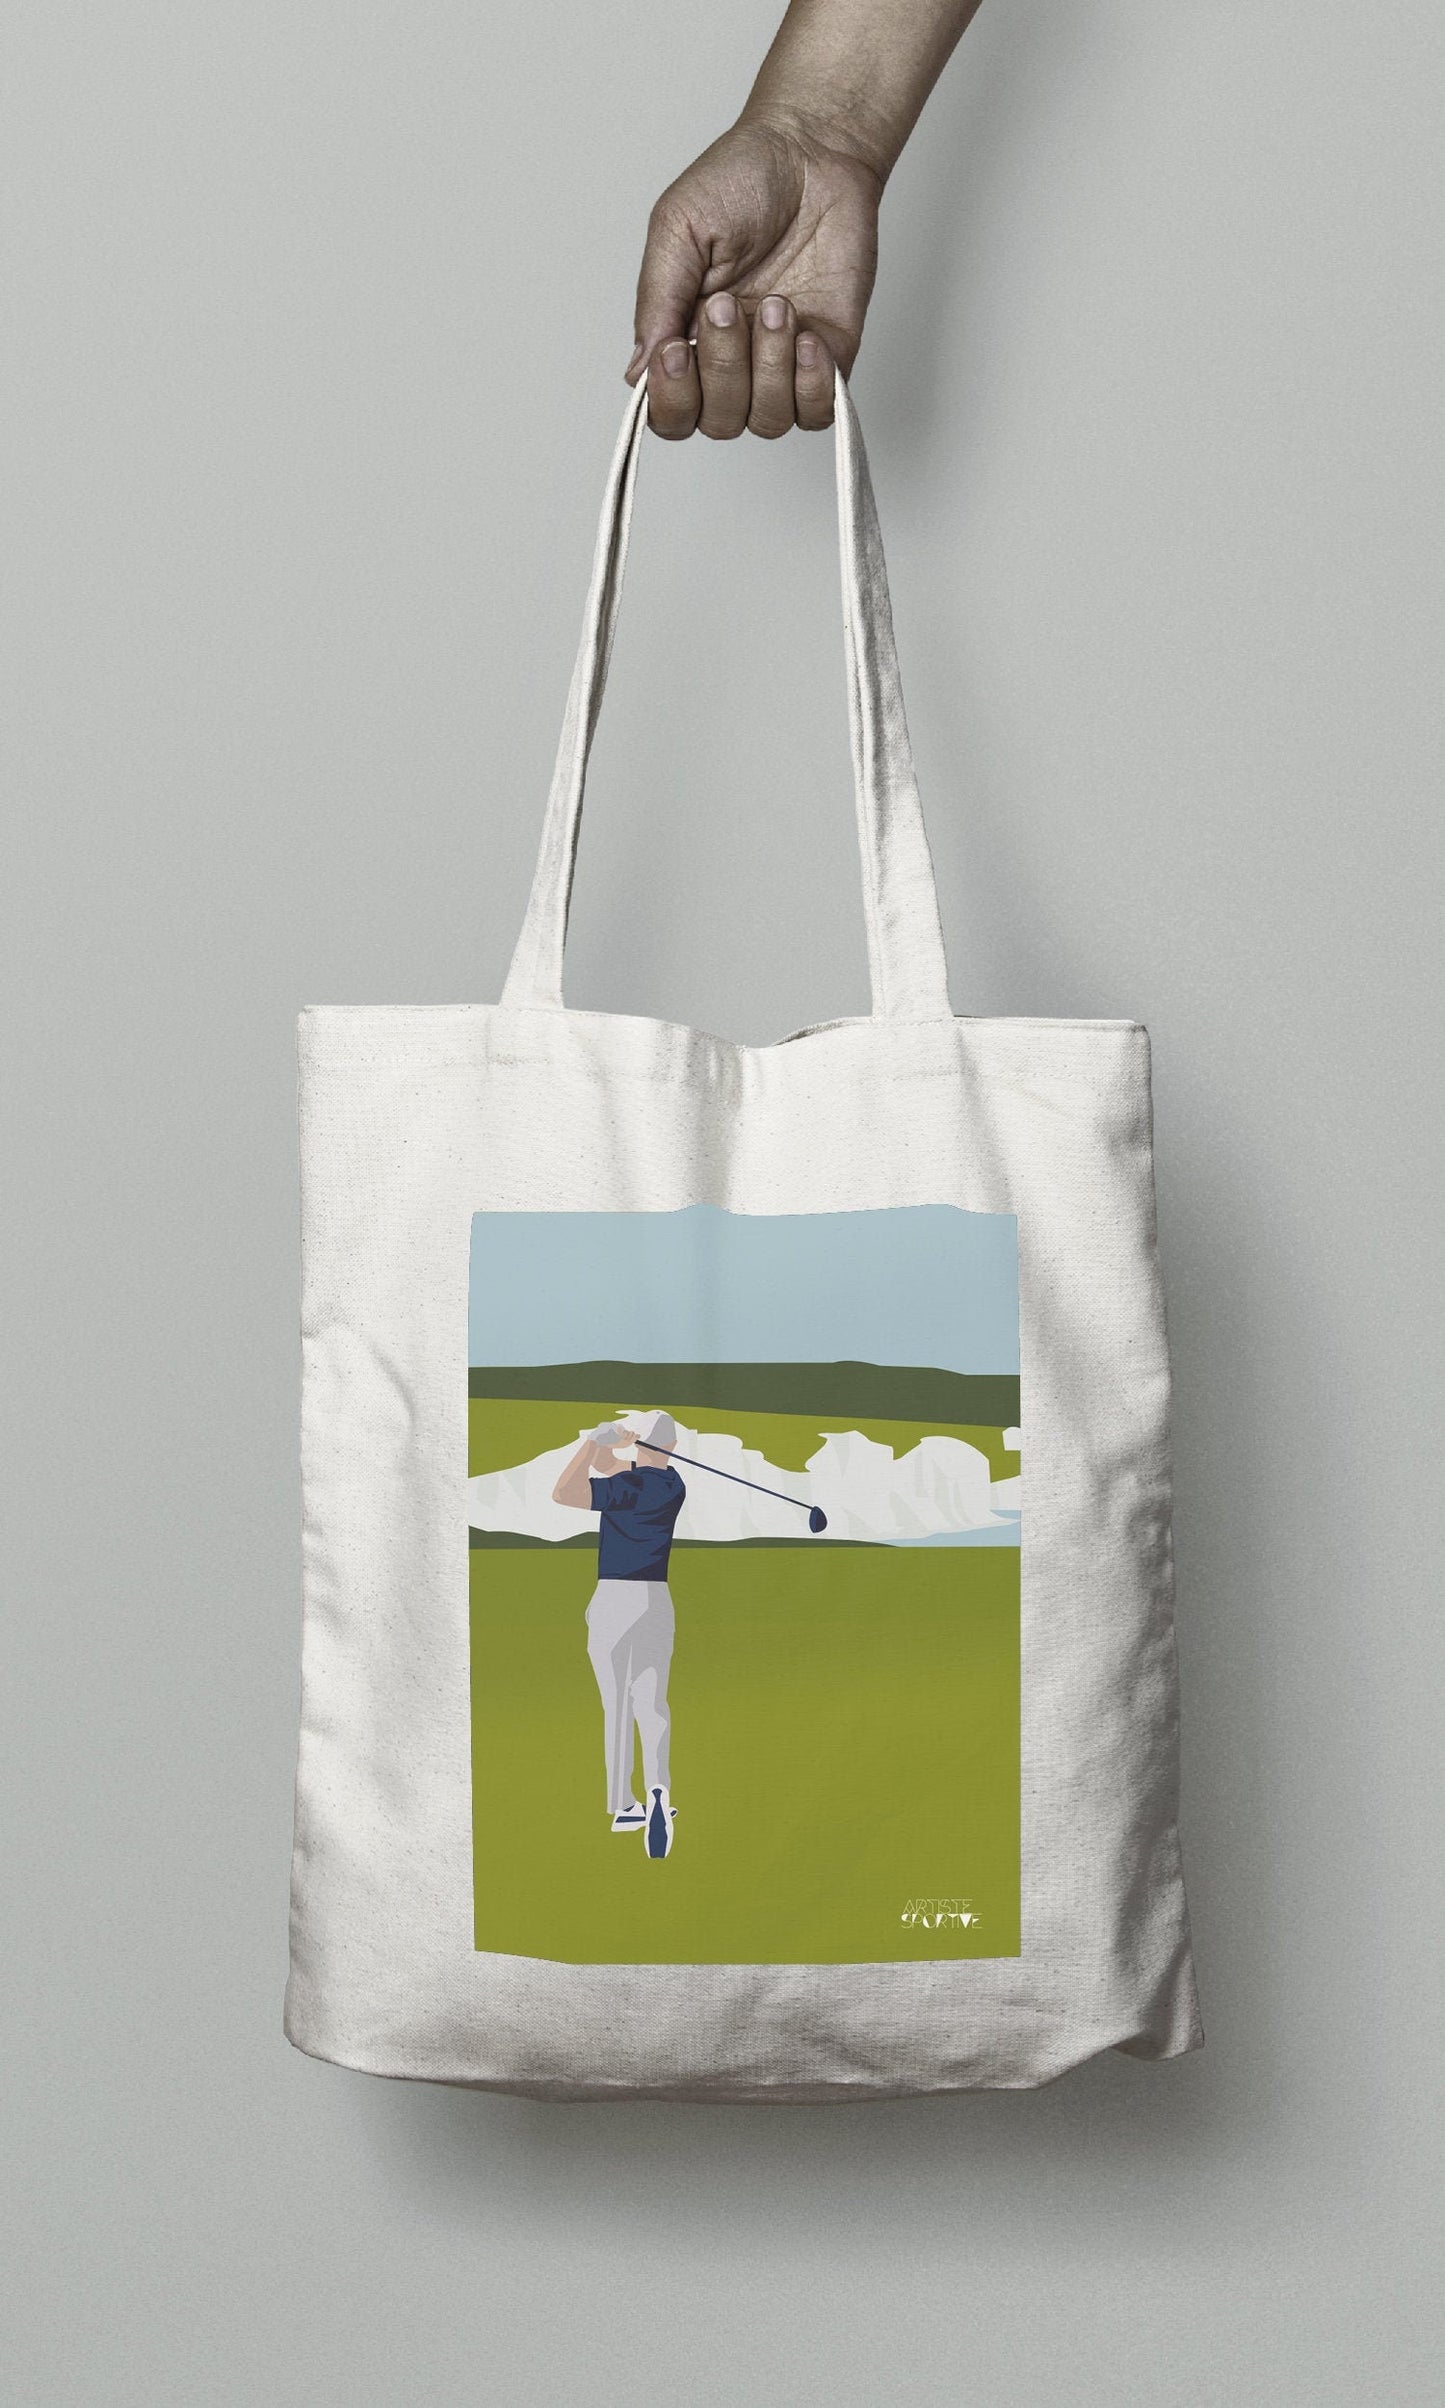 Tote bag or bag "Golf at Beachy Head"